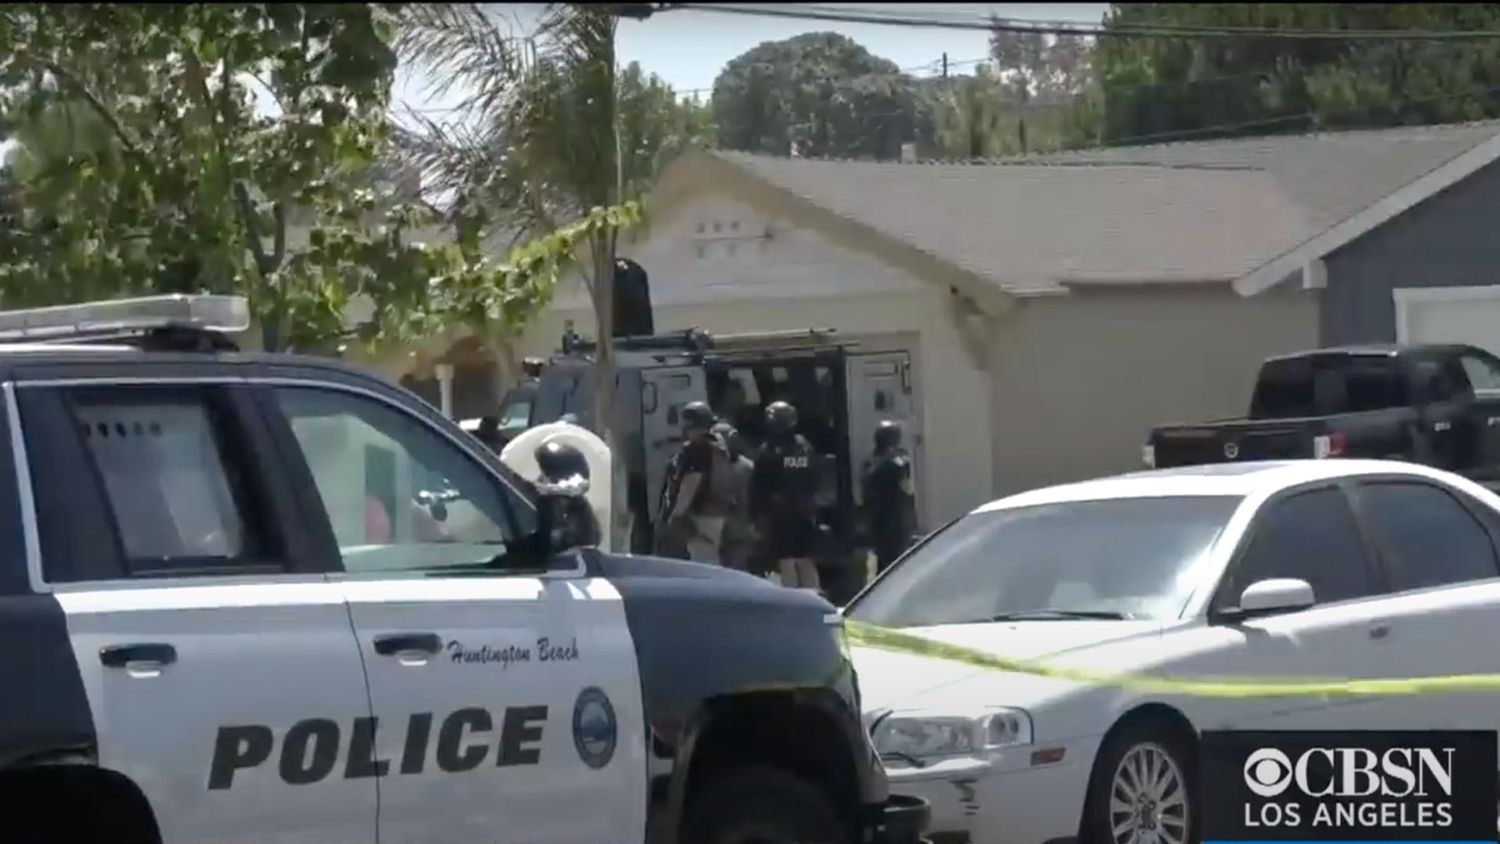 Disputa imobiliária entre membros da família deixa 1 morto e 3 feridos no sul da Califórnia.